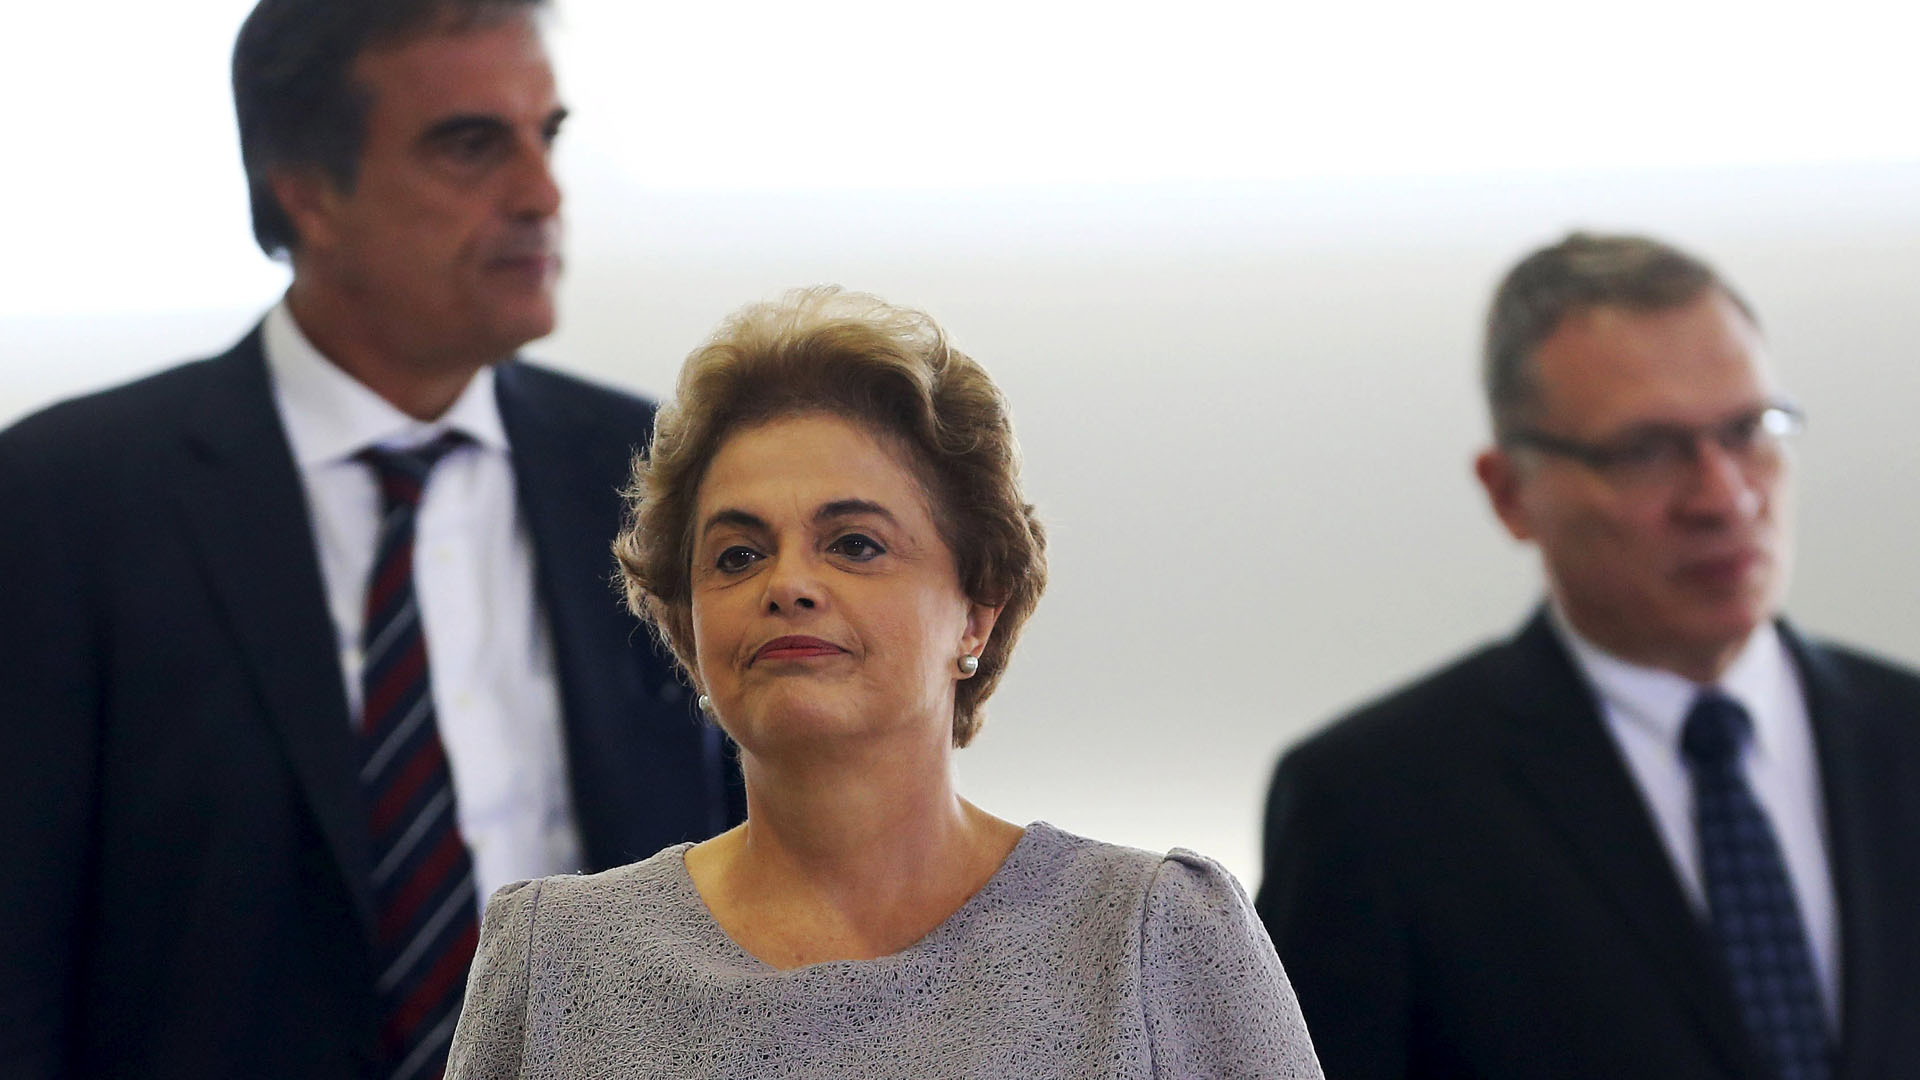 La primera mandataria de Brasil indicó que el proceso abierto en la Cámara de Diputados de su país busca su renuncia